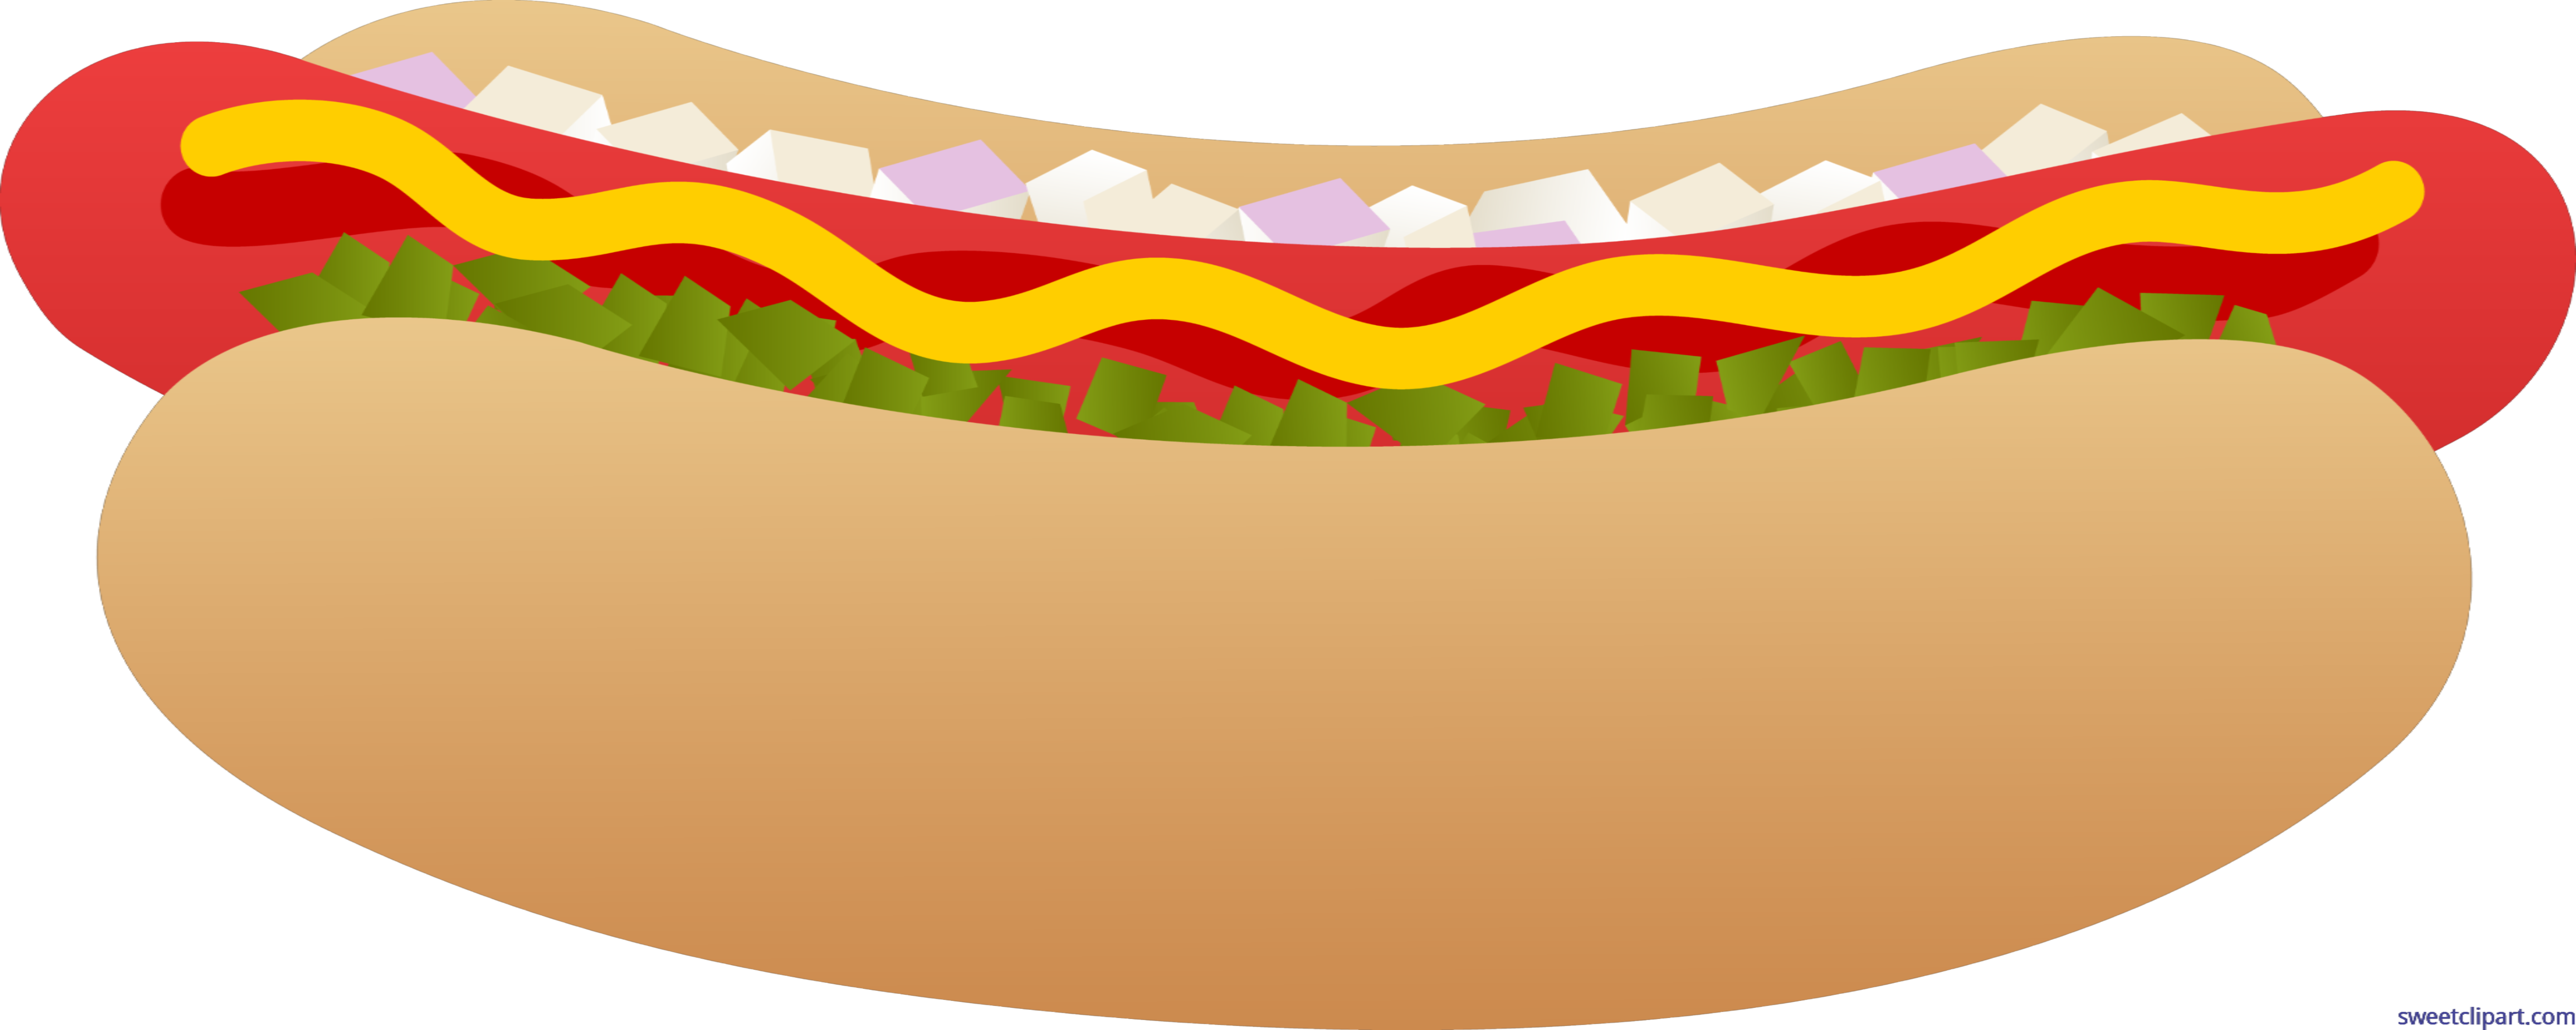 Hot dog bun.